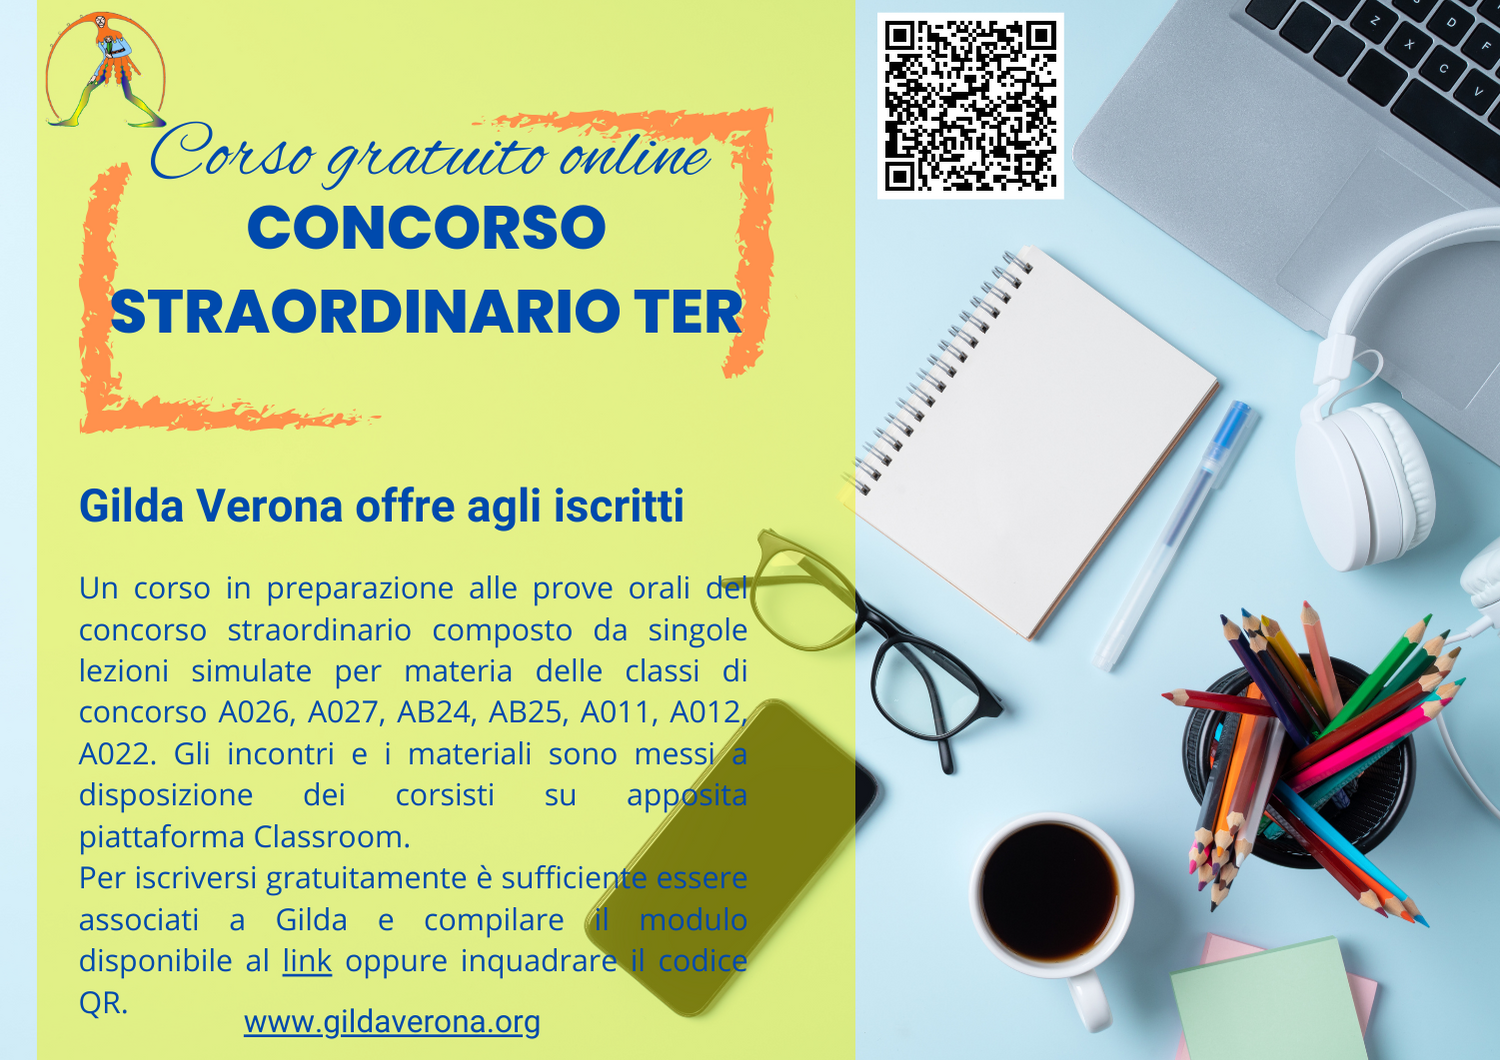 Corso gratuito online: CONCORSO STRAORDINARIO TER